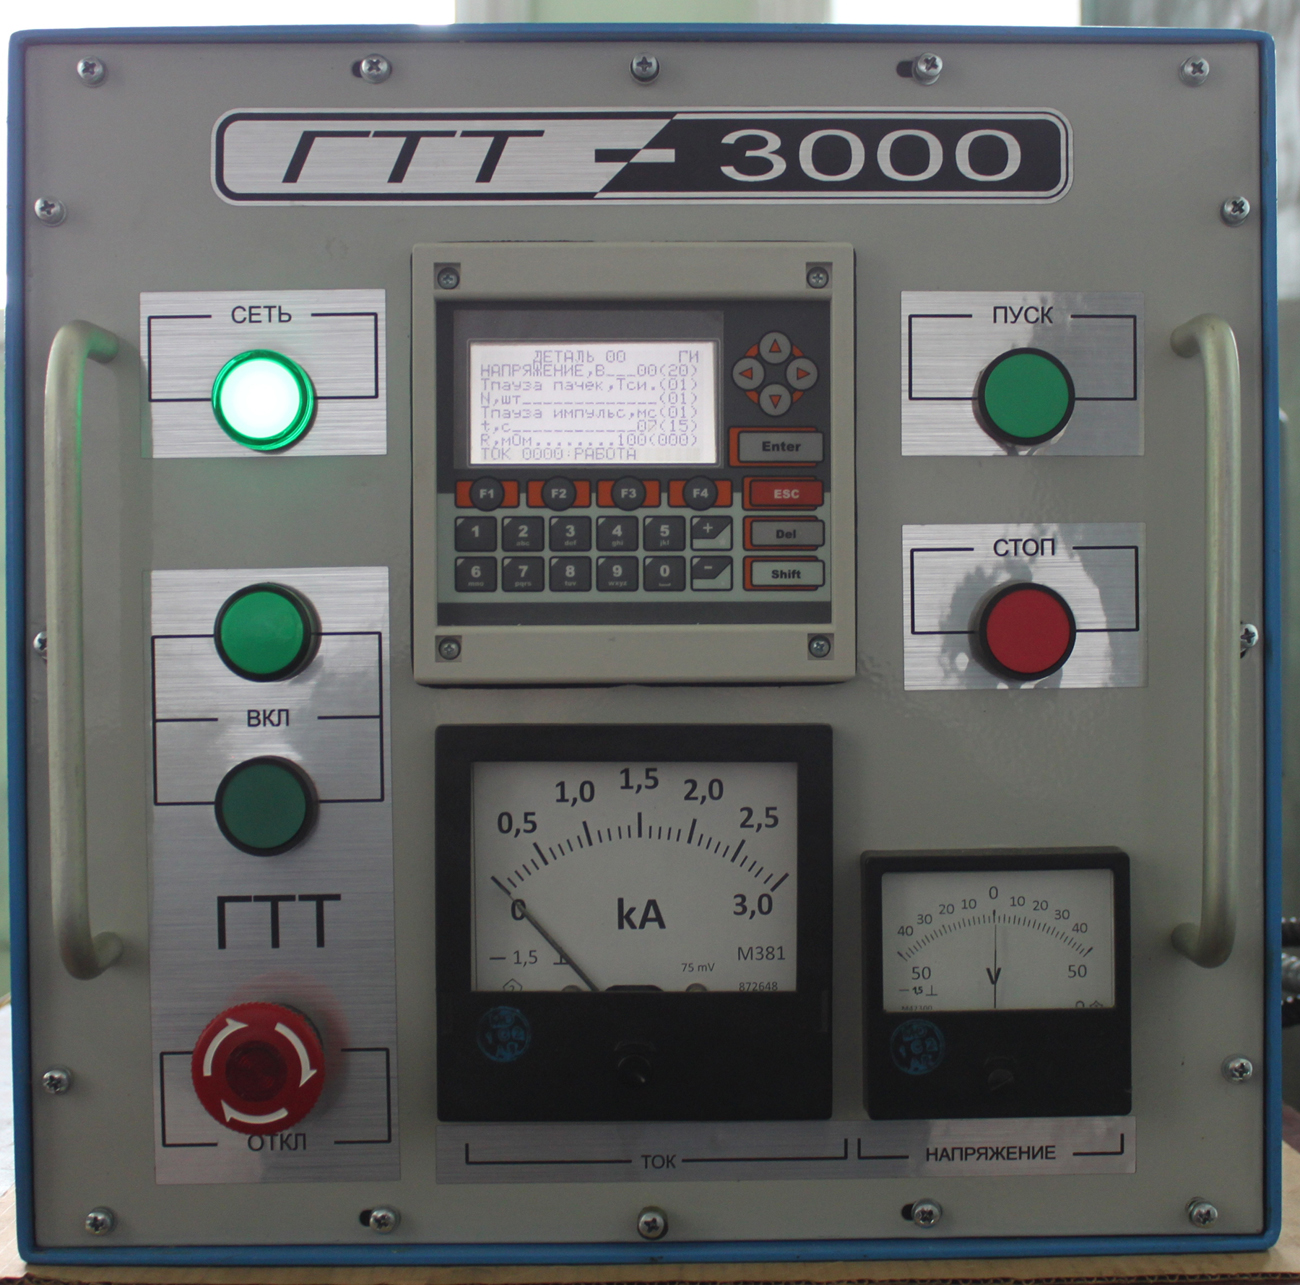 Генератор ГТТ-3000